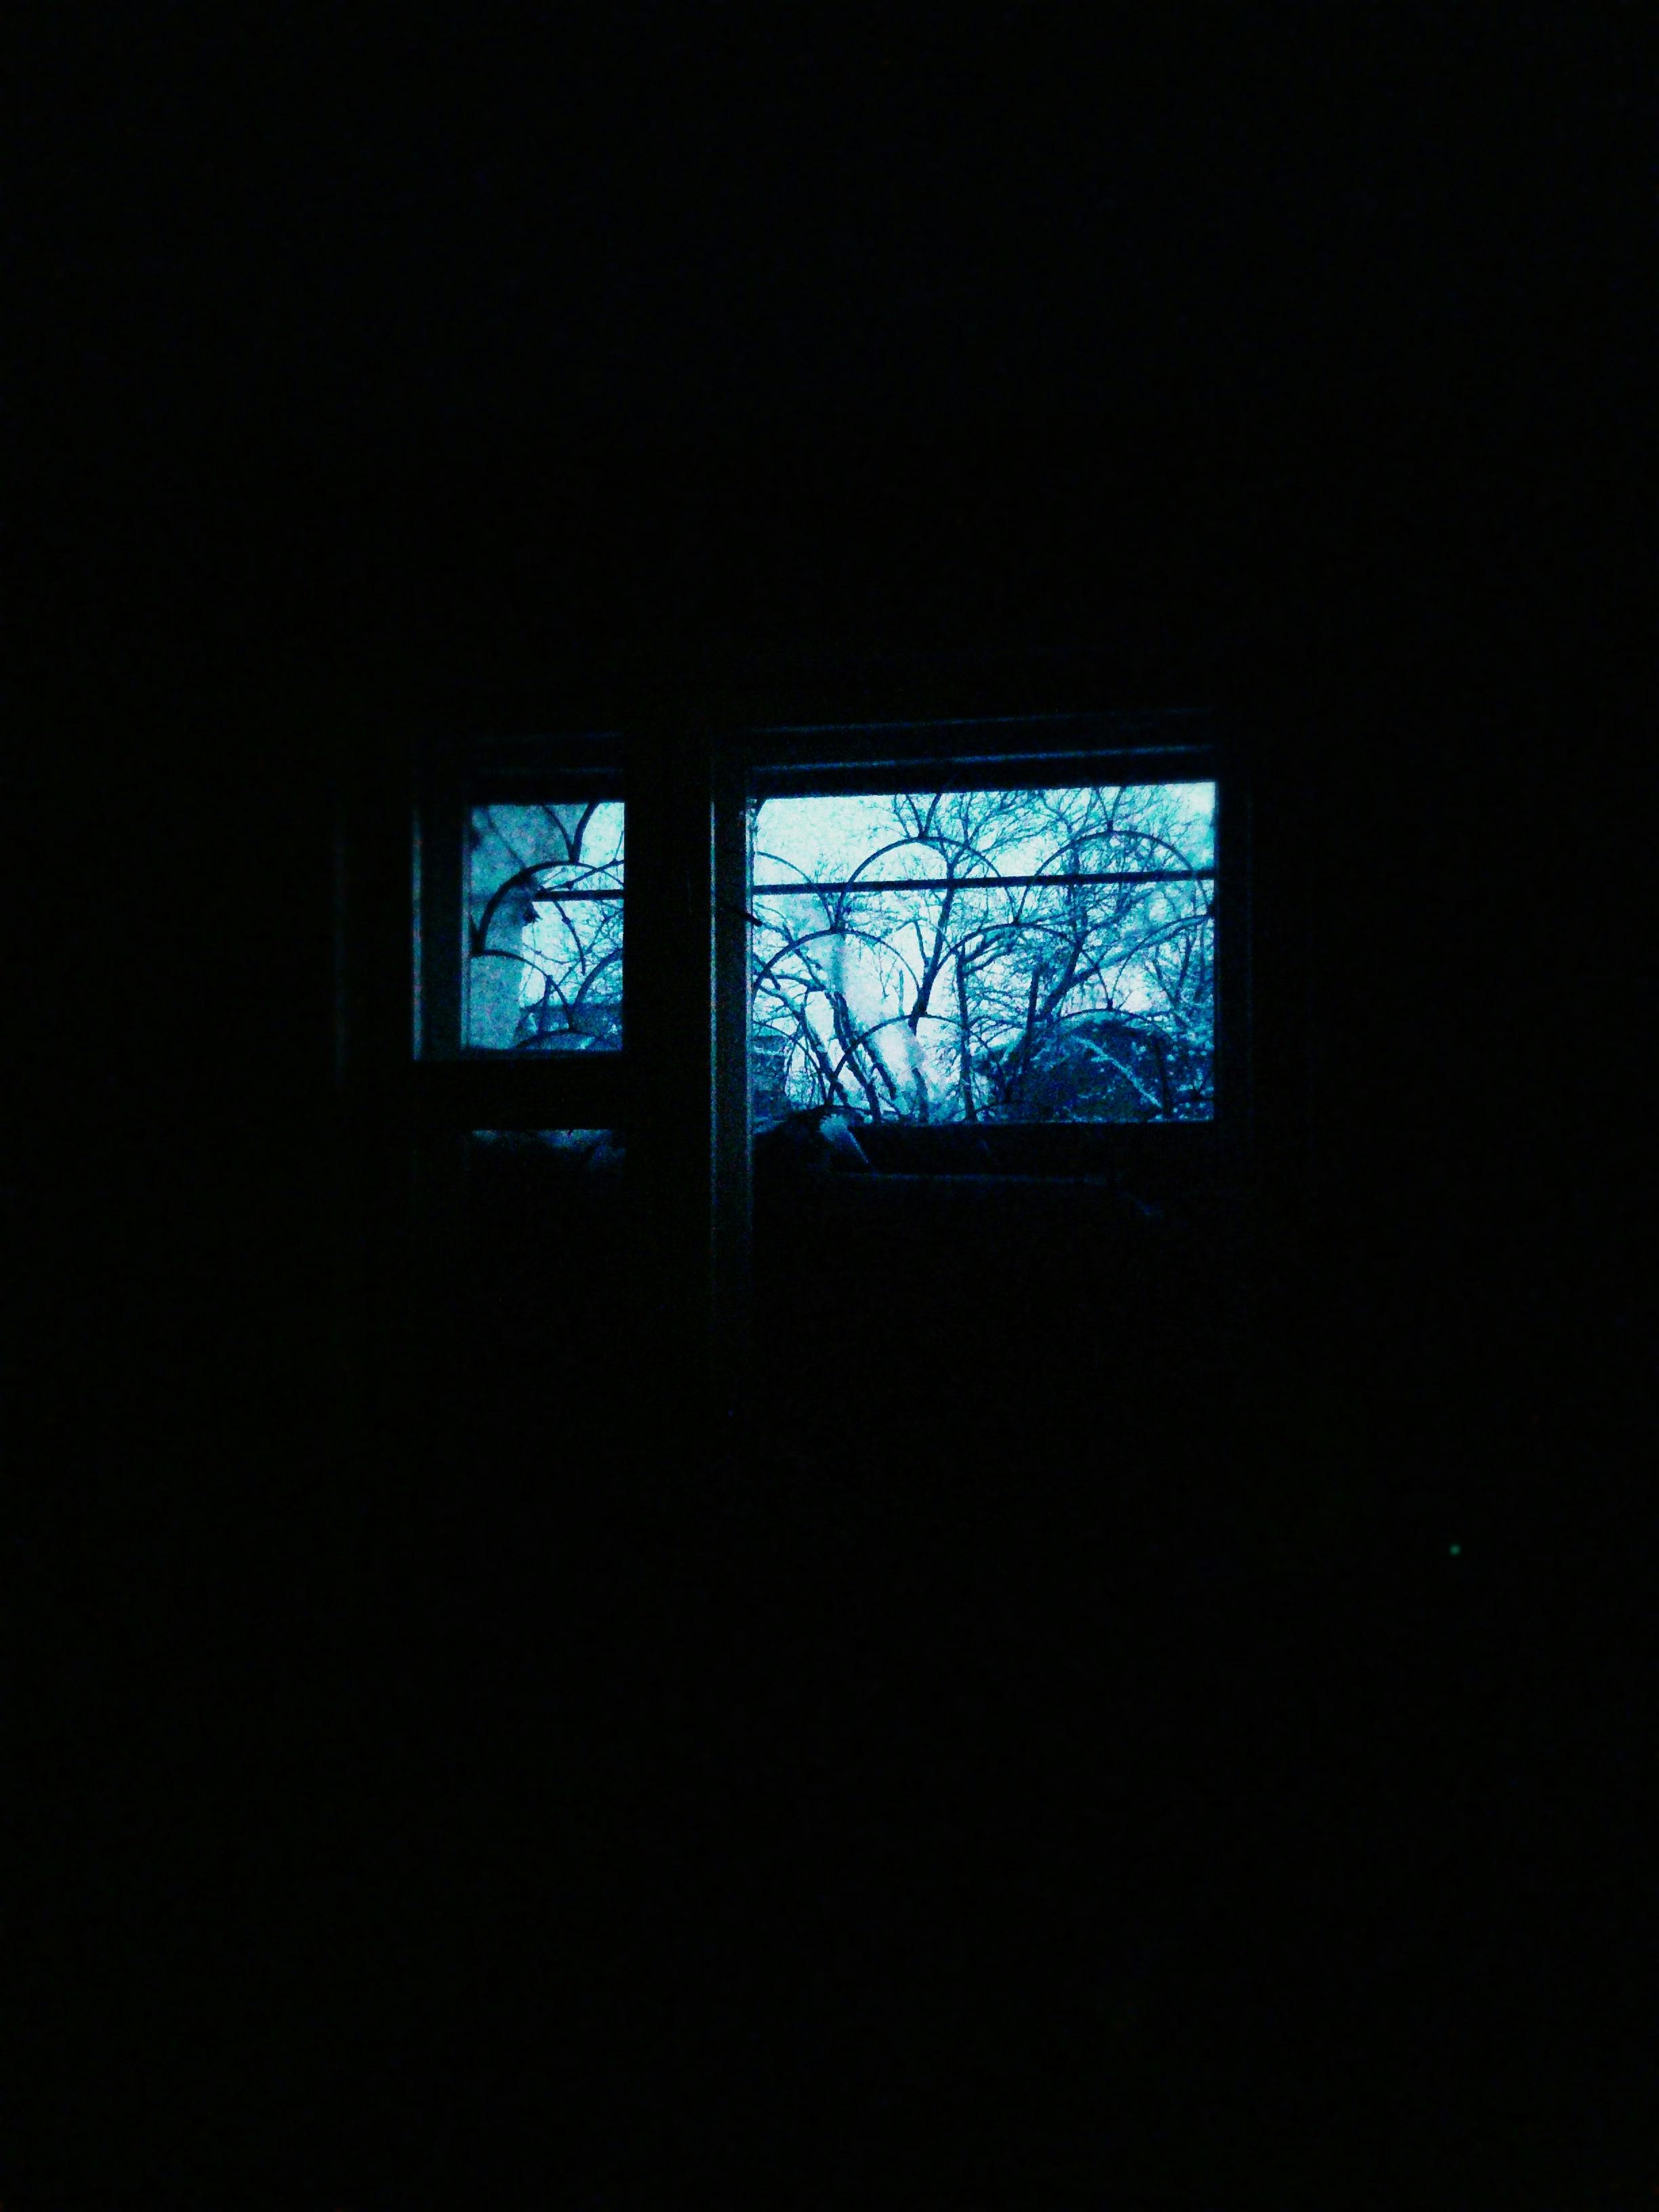 コールド 窓 闇の無料の写真素材